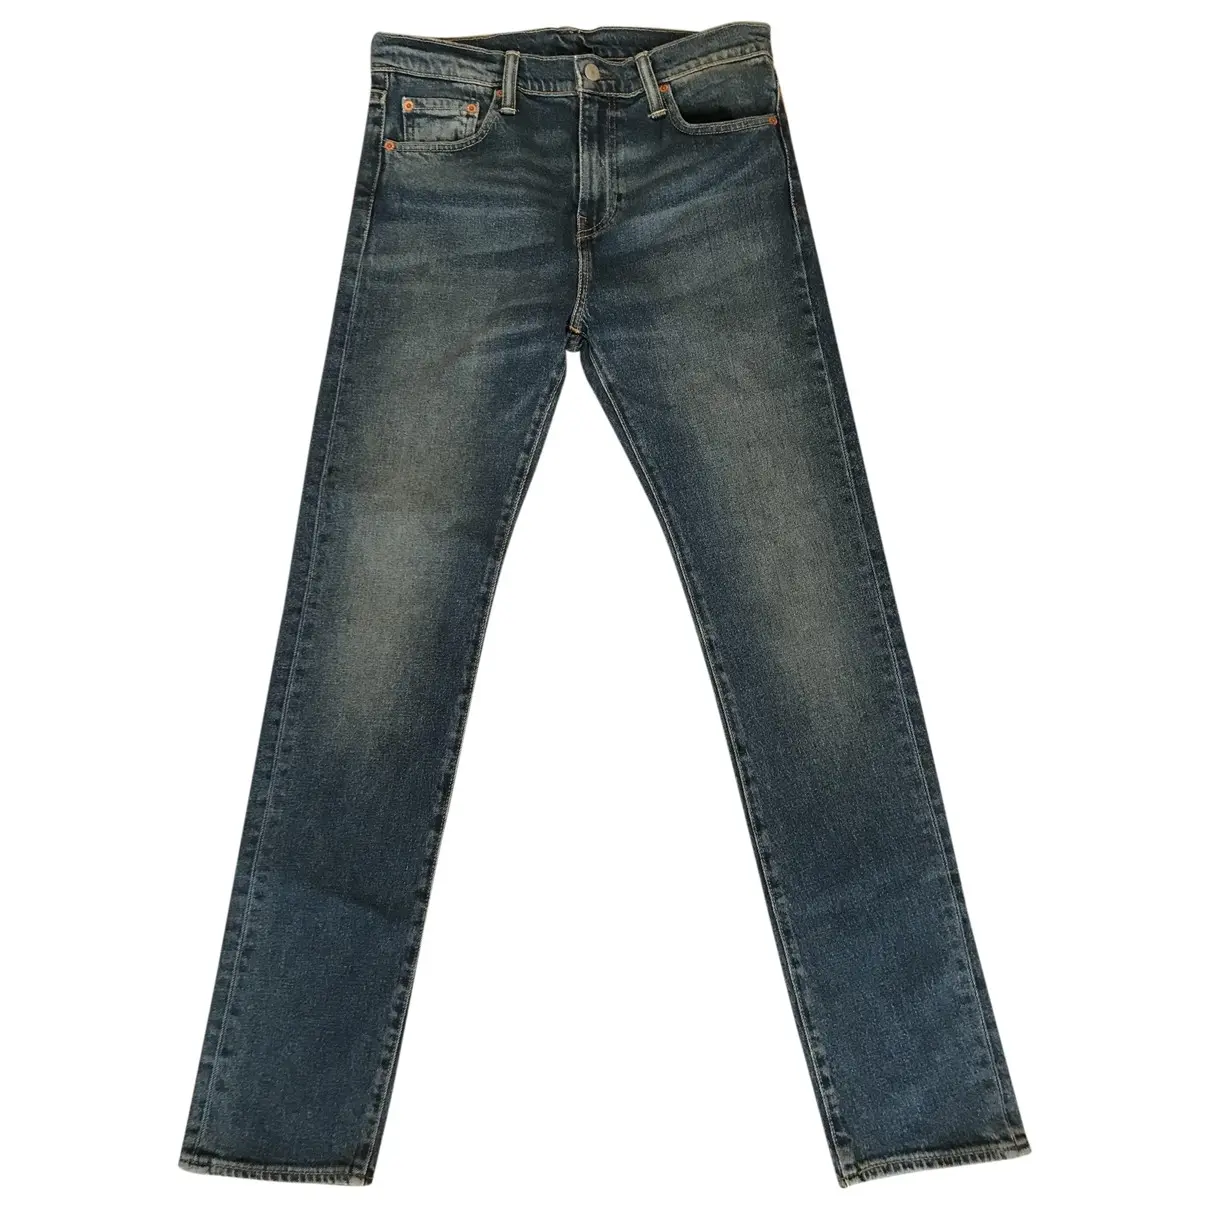 Blue Cotton - elasthane Jeans 510 Levi's